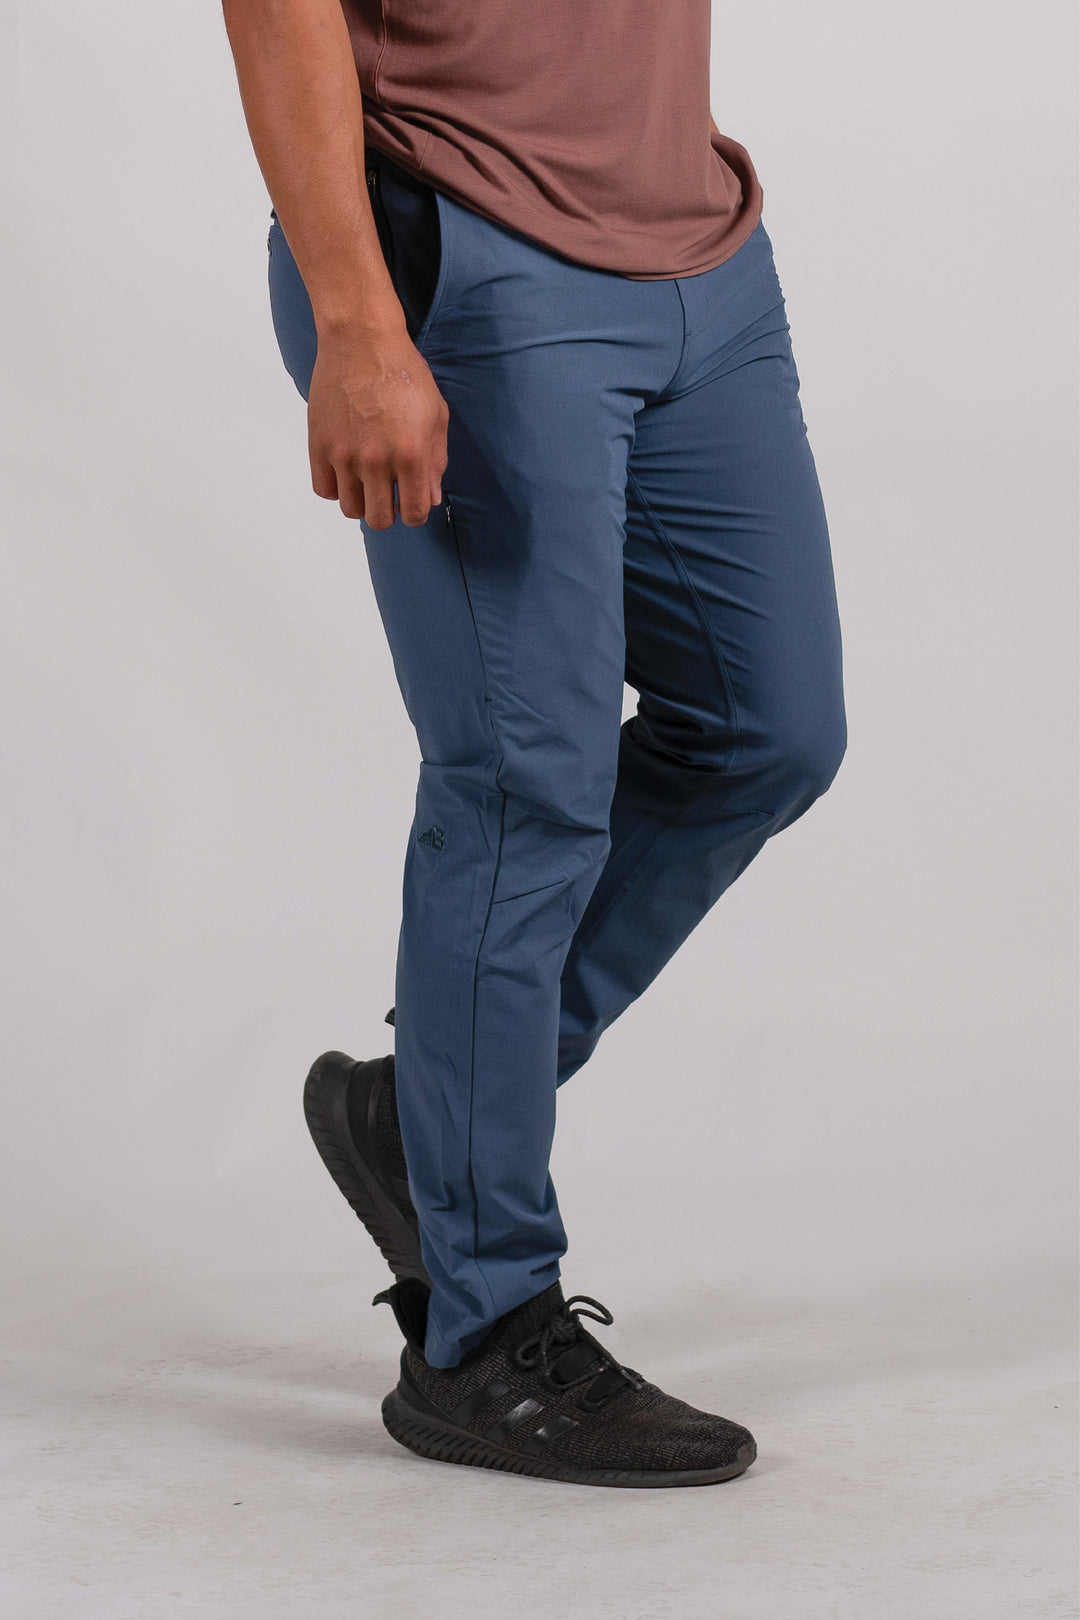 2-Pack Bundle: Men's Rocky Mountain Pants (Size XL)